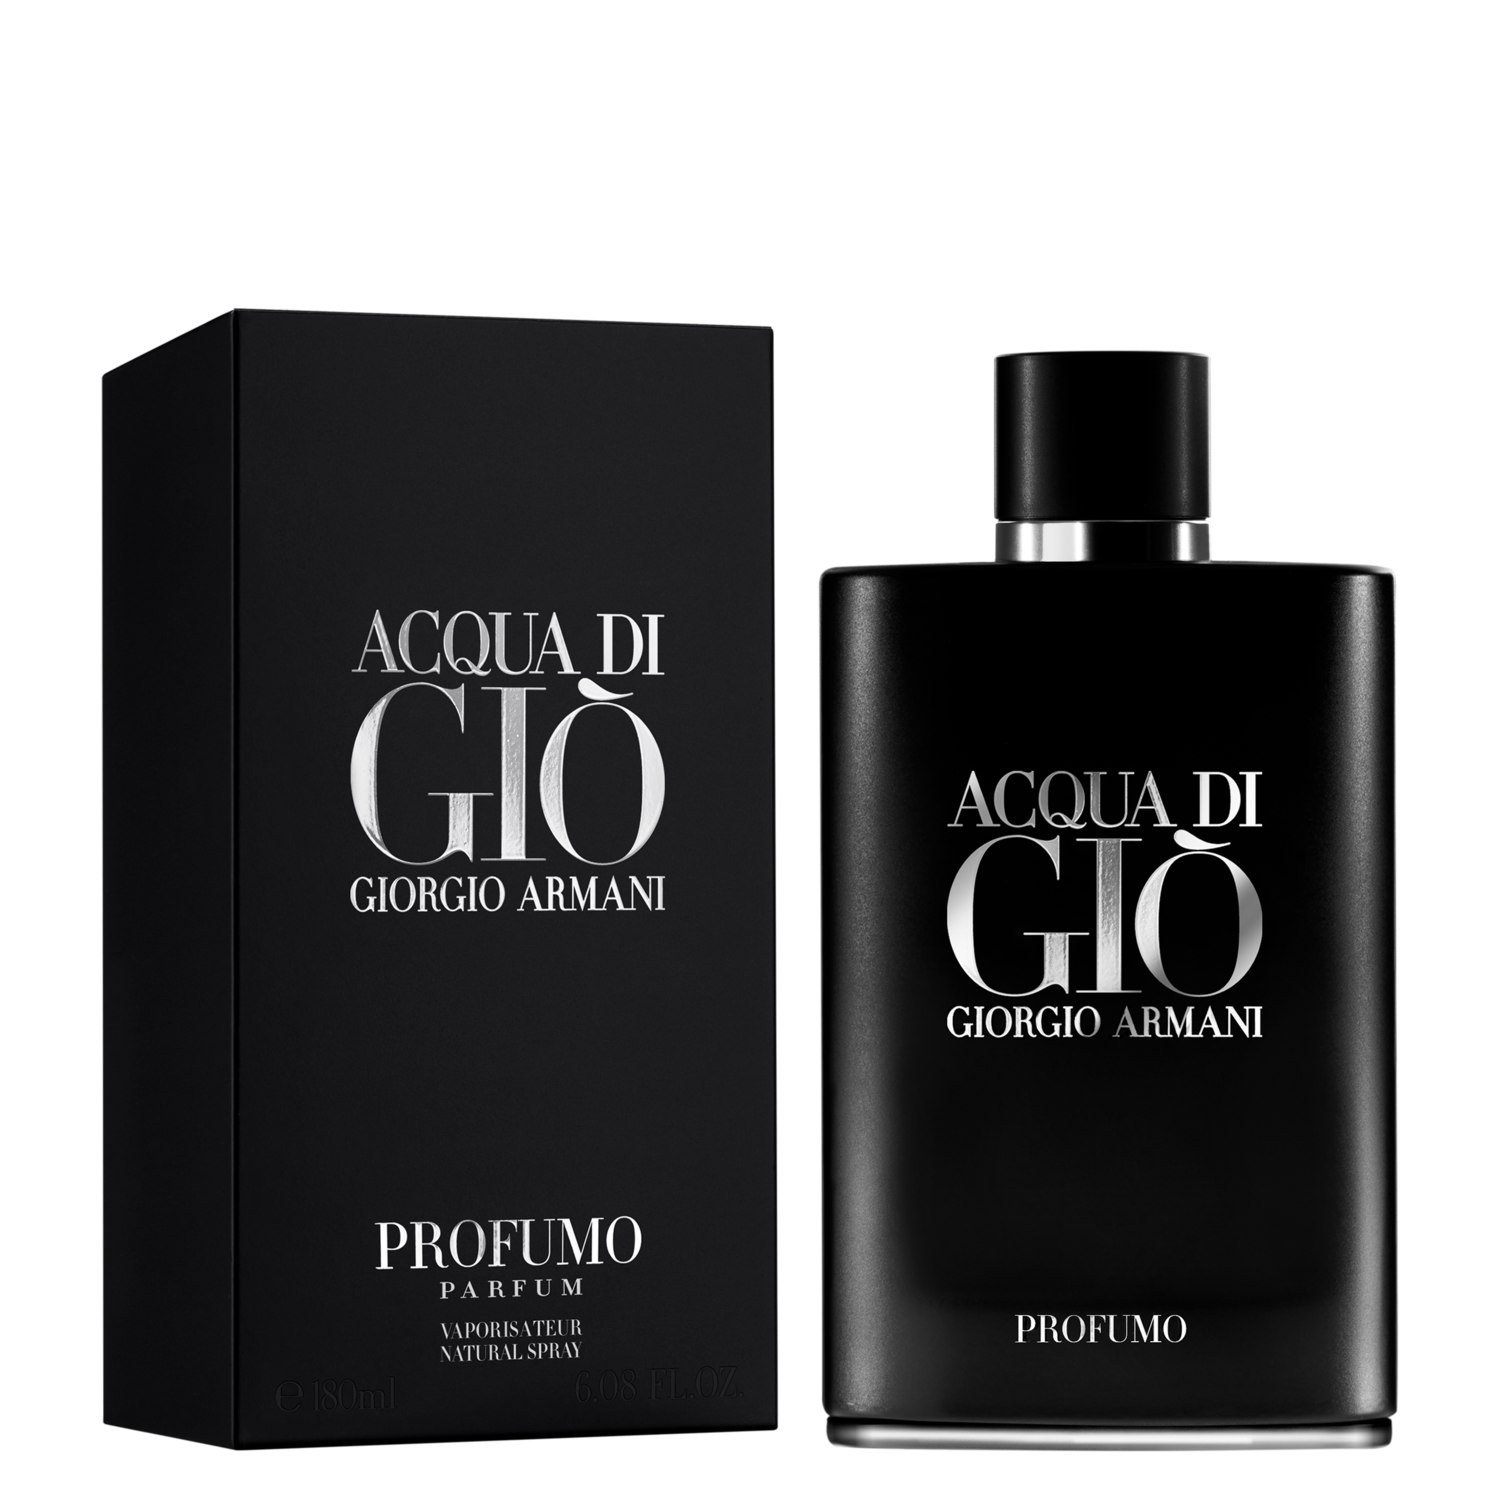 Giorgio Armani nước hoa Giorgio Armani Minh Hà VN nước hoa Minh Hà VN 1 Đắm chìm trong hương thơm đến từ thương hiệu Giorgio Armani